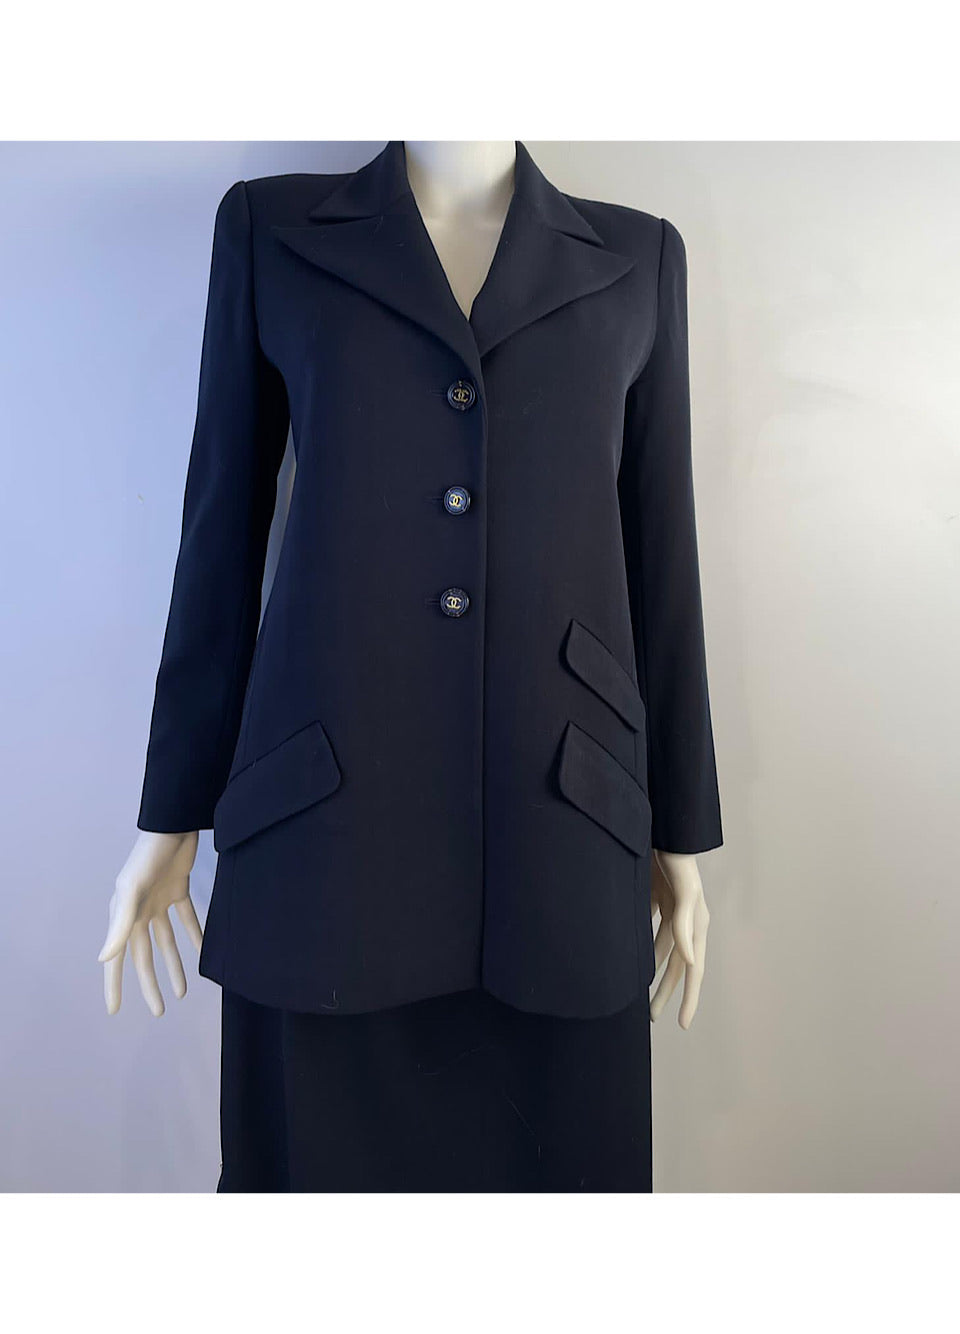 Sold at Auction: Vermilion Chanel Vintage Coat